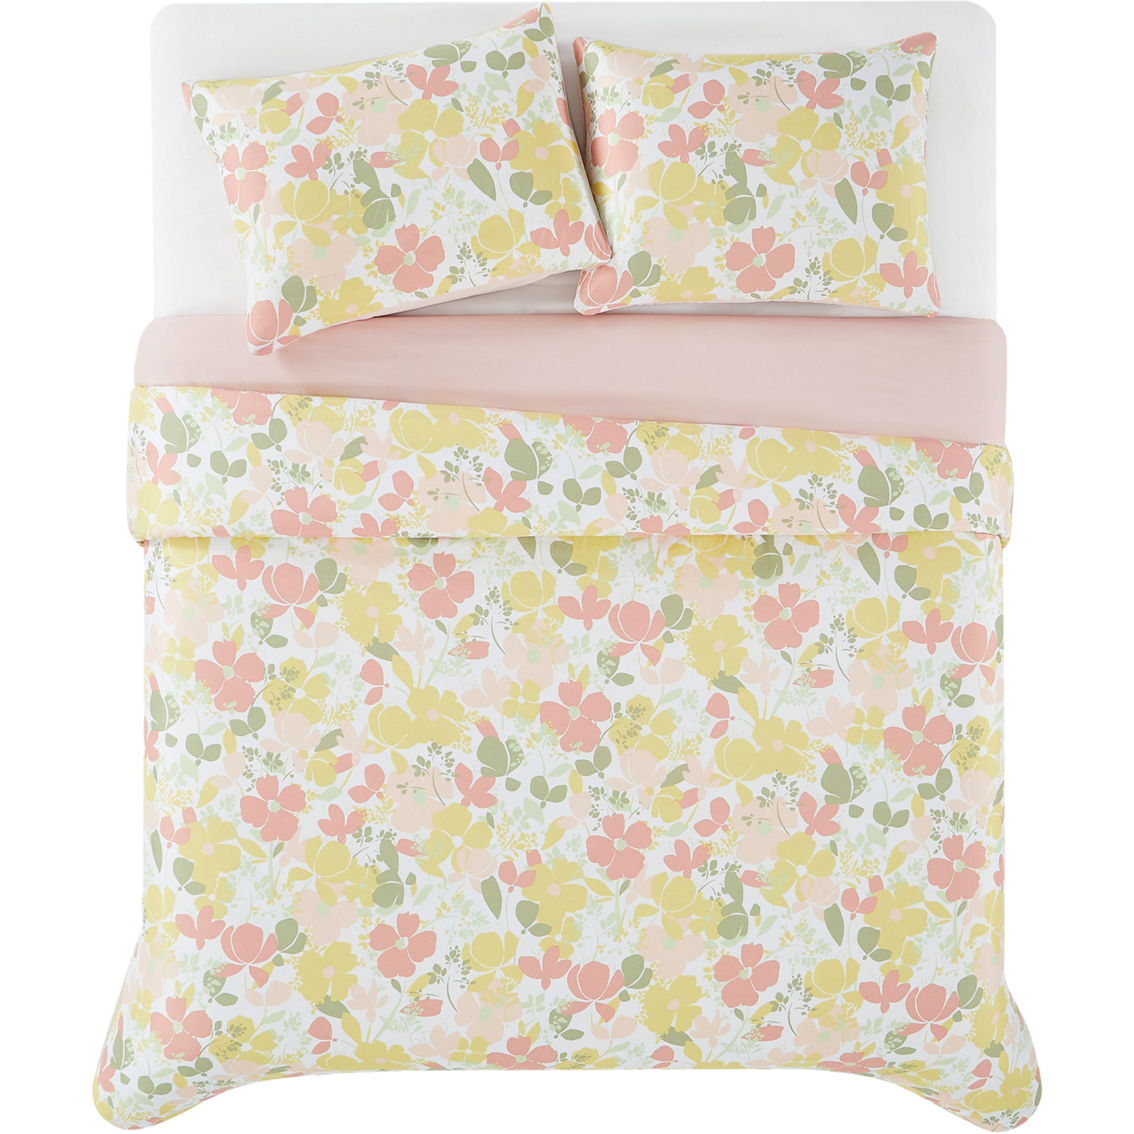 Truly Soft Garden Floral Comforter Set - Image 2 of 4